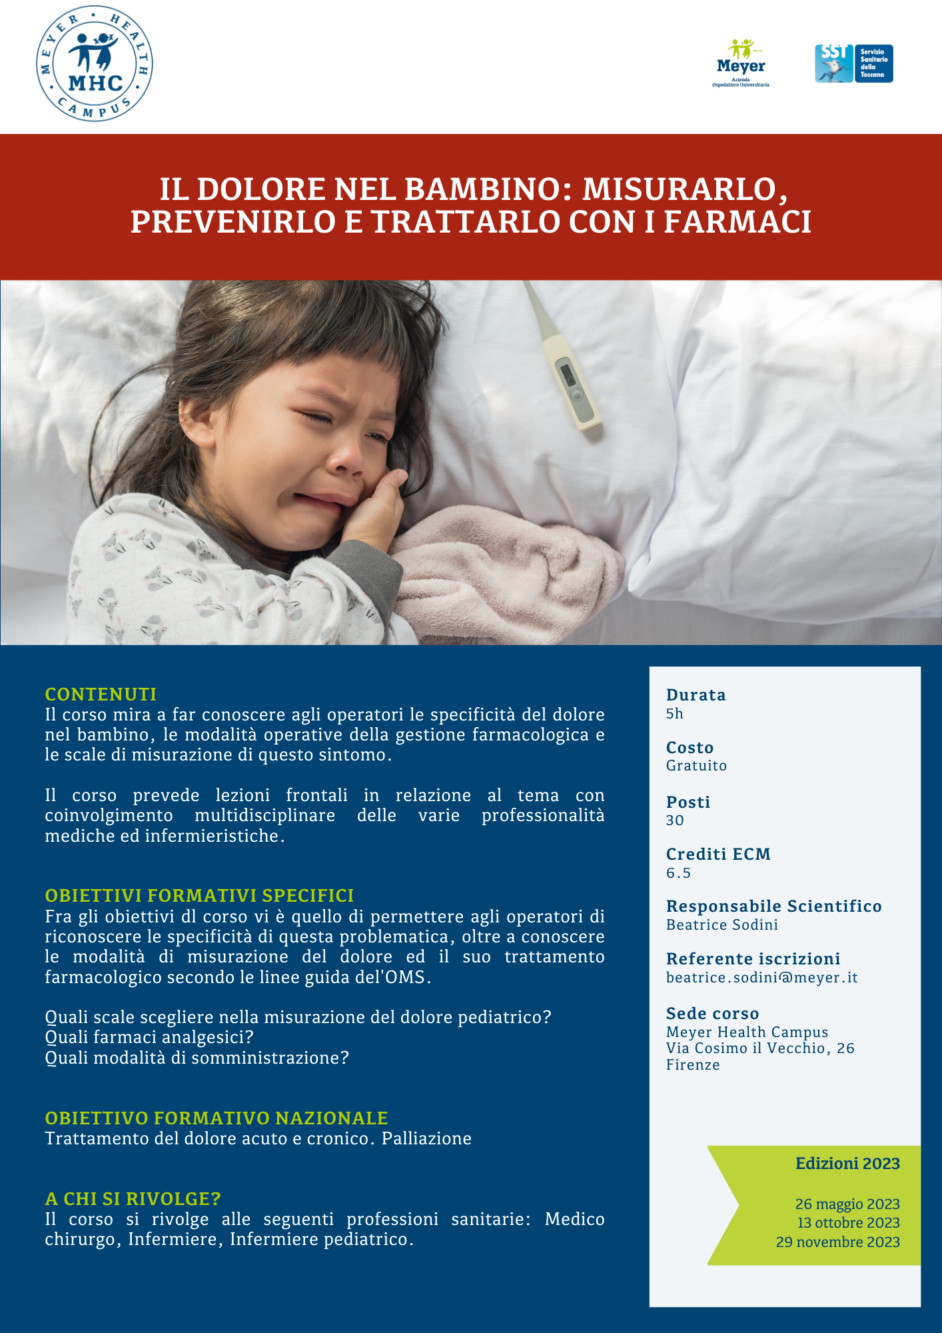 Il dolore nel bambino: misurarlo, prevenirlo e trattarlo con i farmaci (26 maggio 2023)